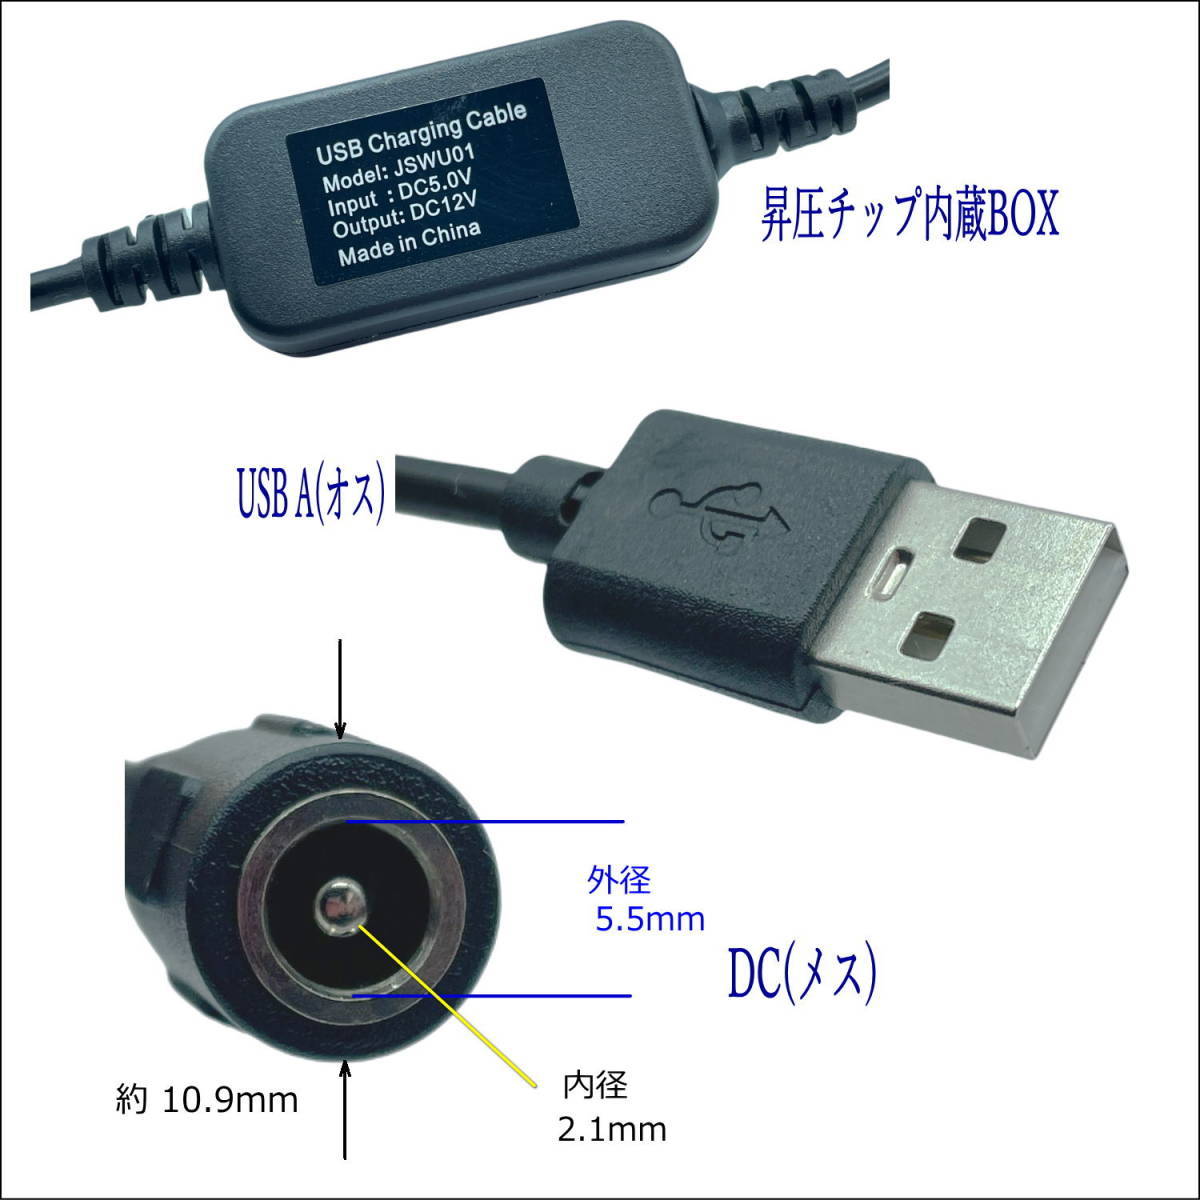 ☆USB-DC(5.5/2.1)(メス) 5V→12V昇圧ケーブル 12V/1Aまで DC延長 36cm LED照明や監視カメラなどの小電力機器用に使用できます